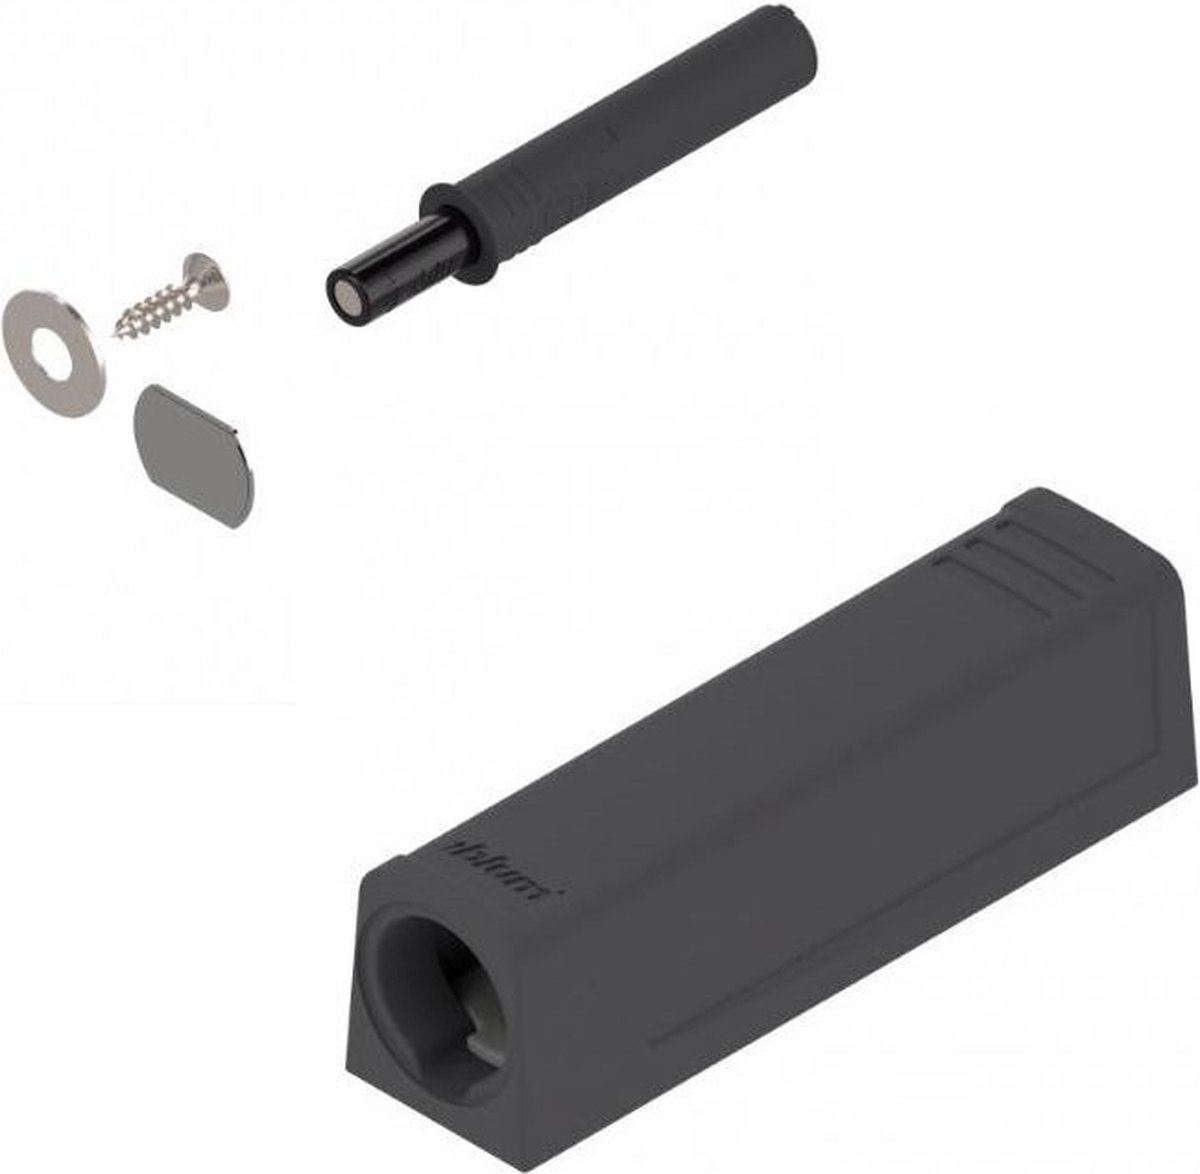 Blum Tip-on met magneet - Korte versie - Zwart - 956.1004 V1TERS - Inclusief adapterplaat